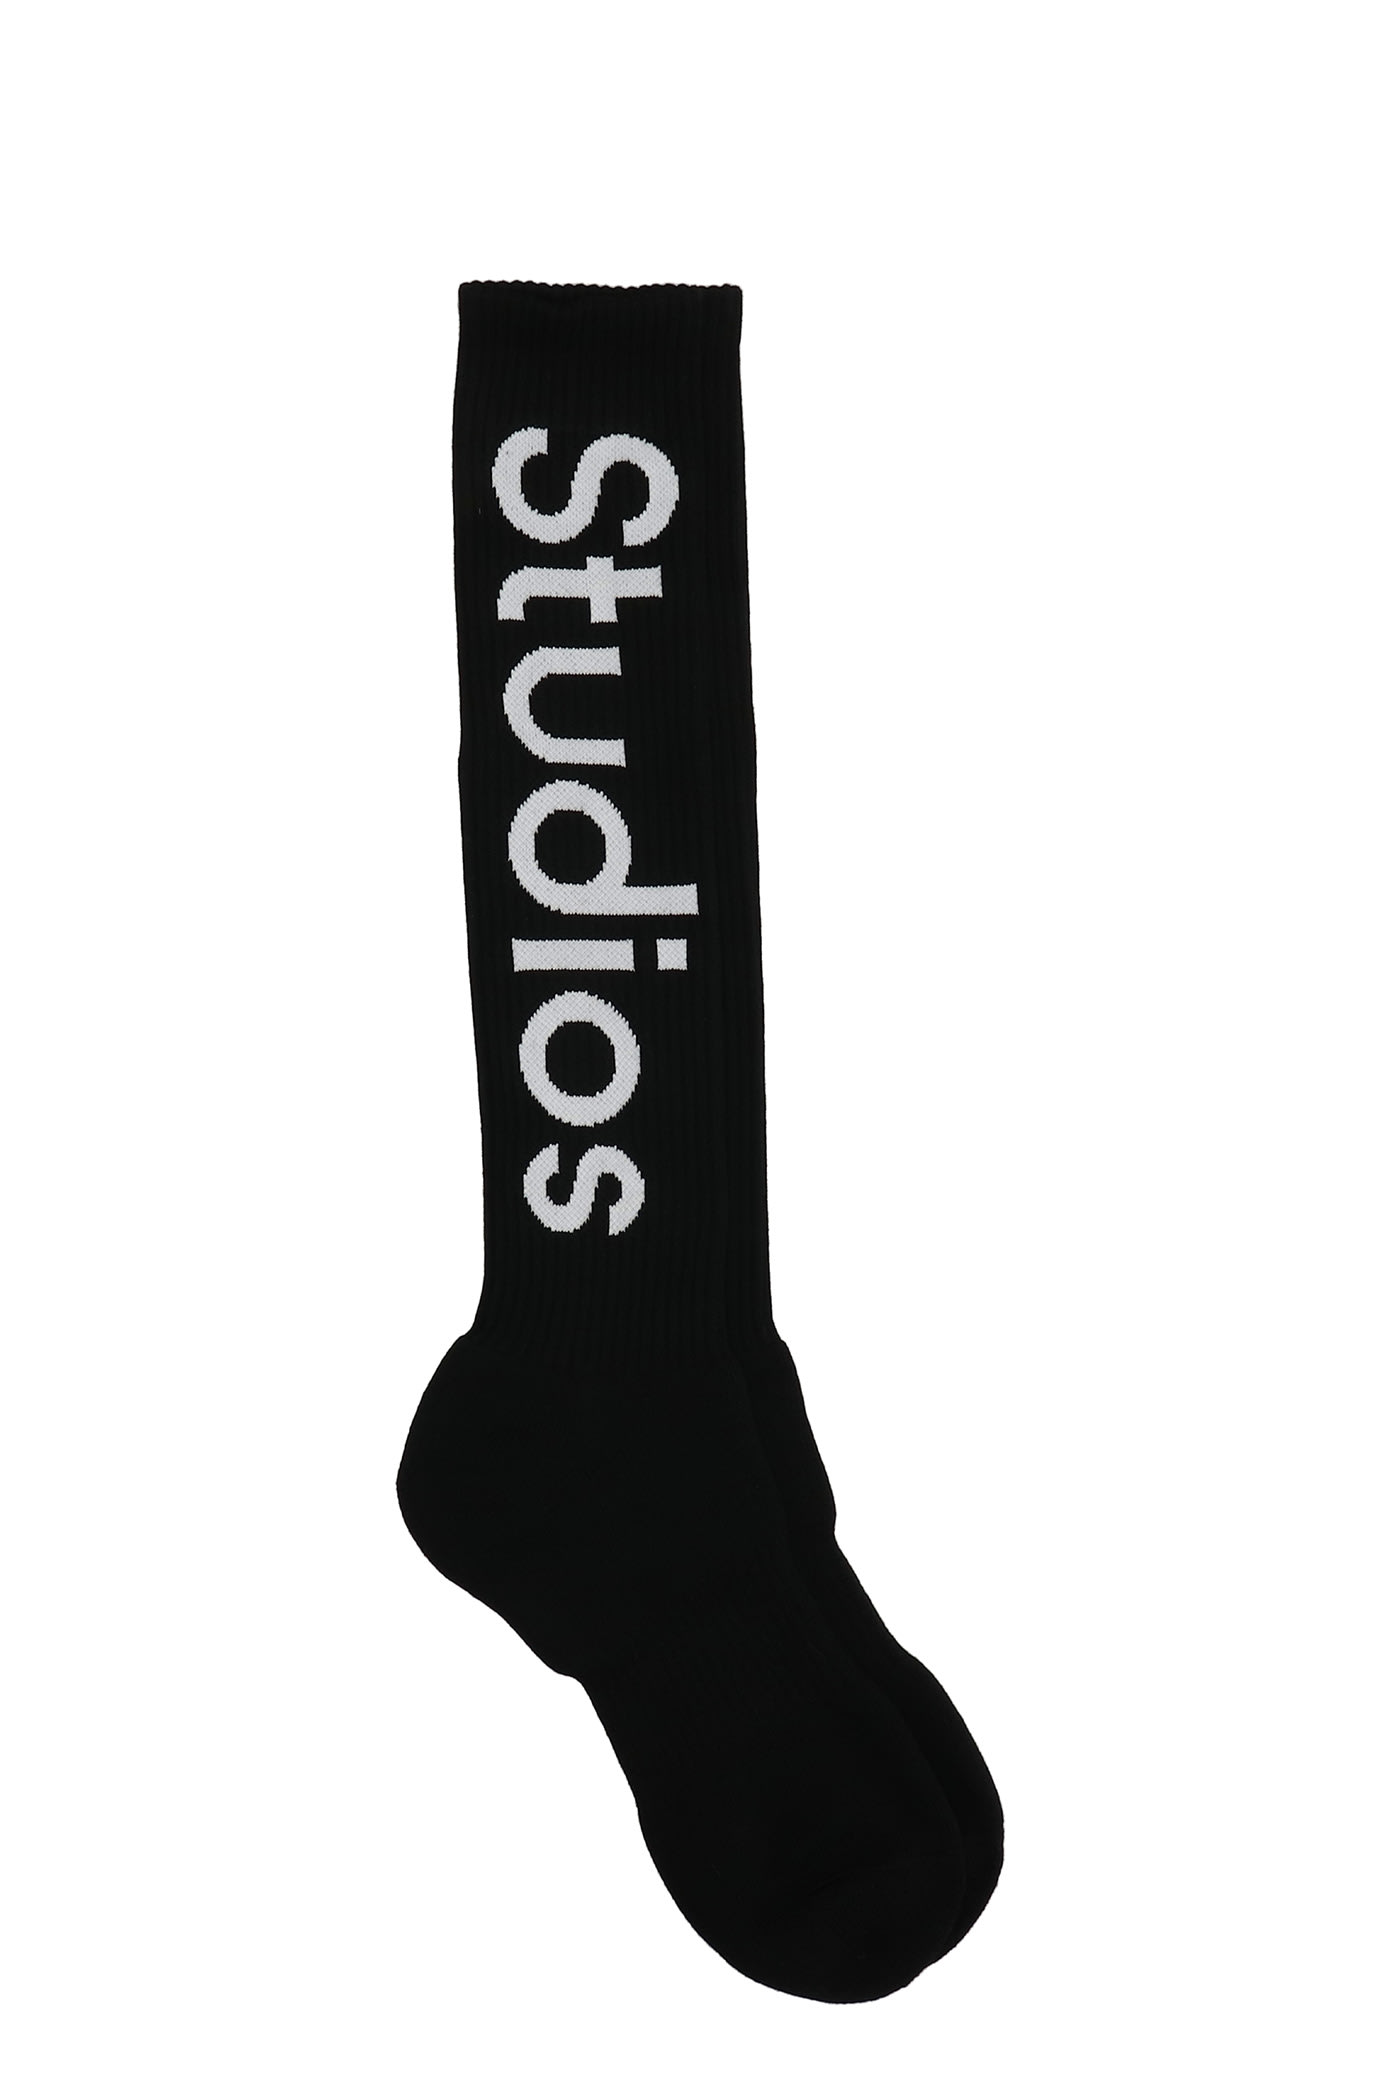 Acne Studios Socks In Black Cotton